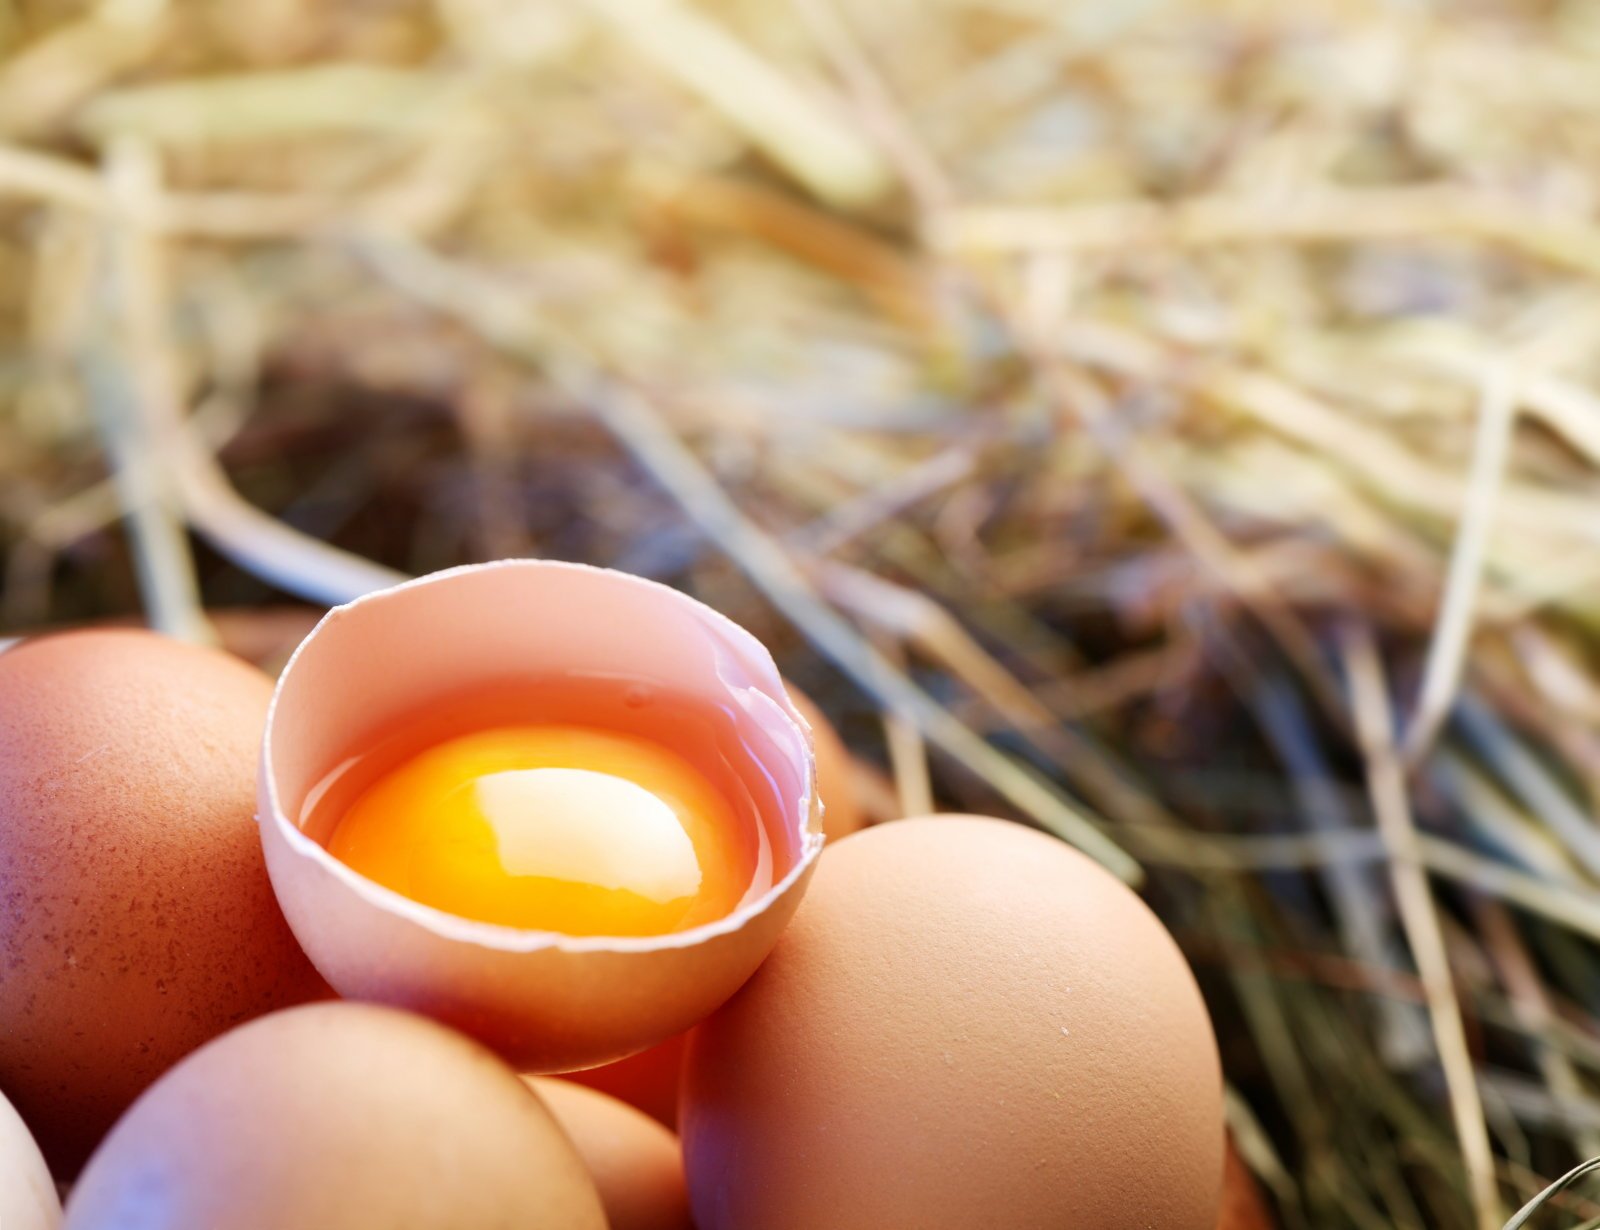 munavalge vs munakollane kaalulangus rasva poletava ahju